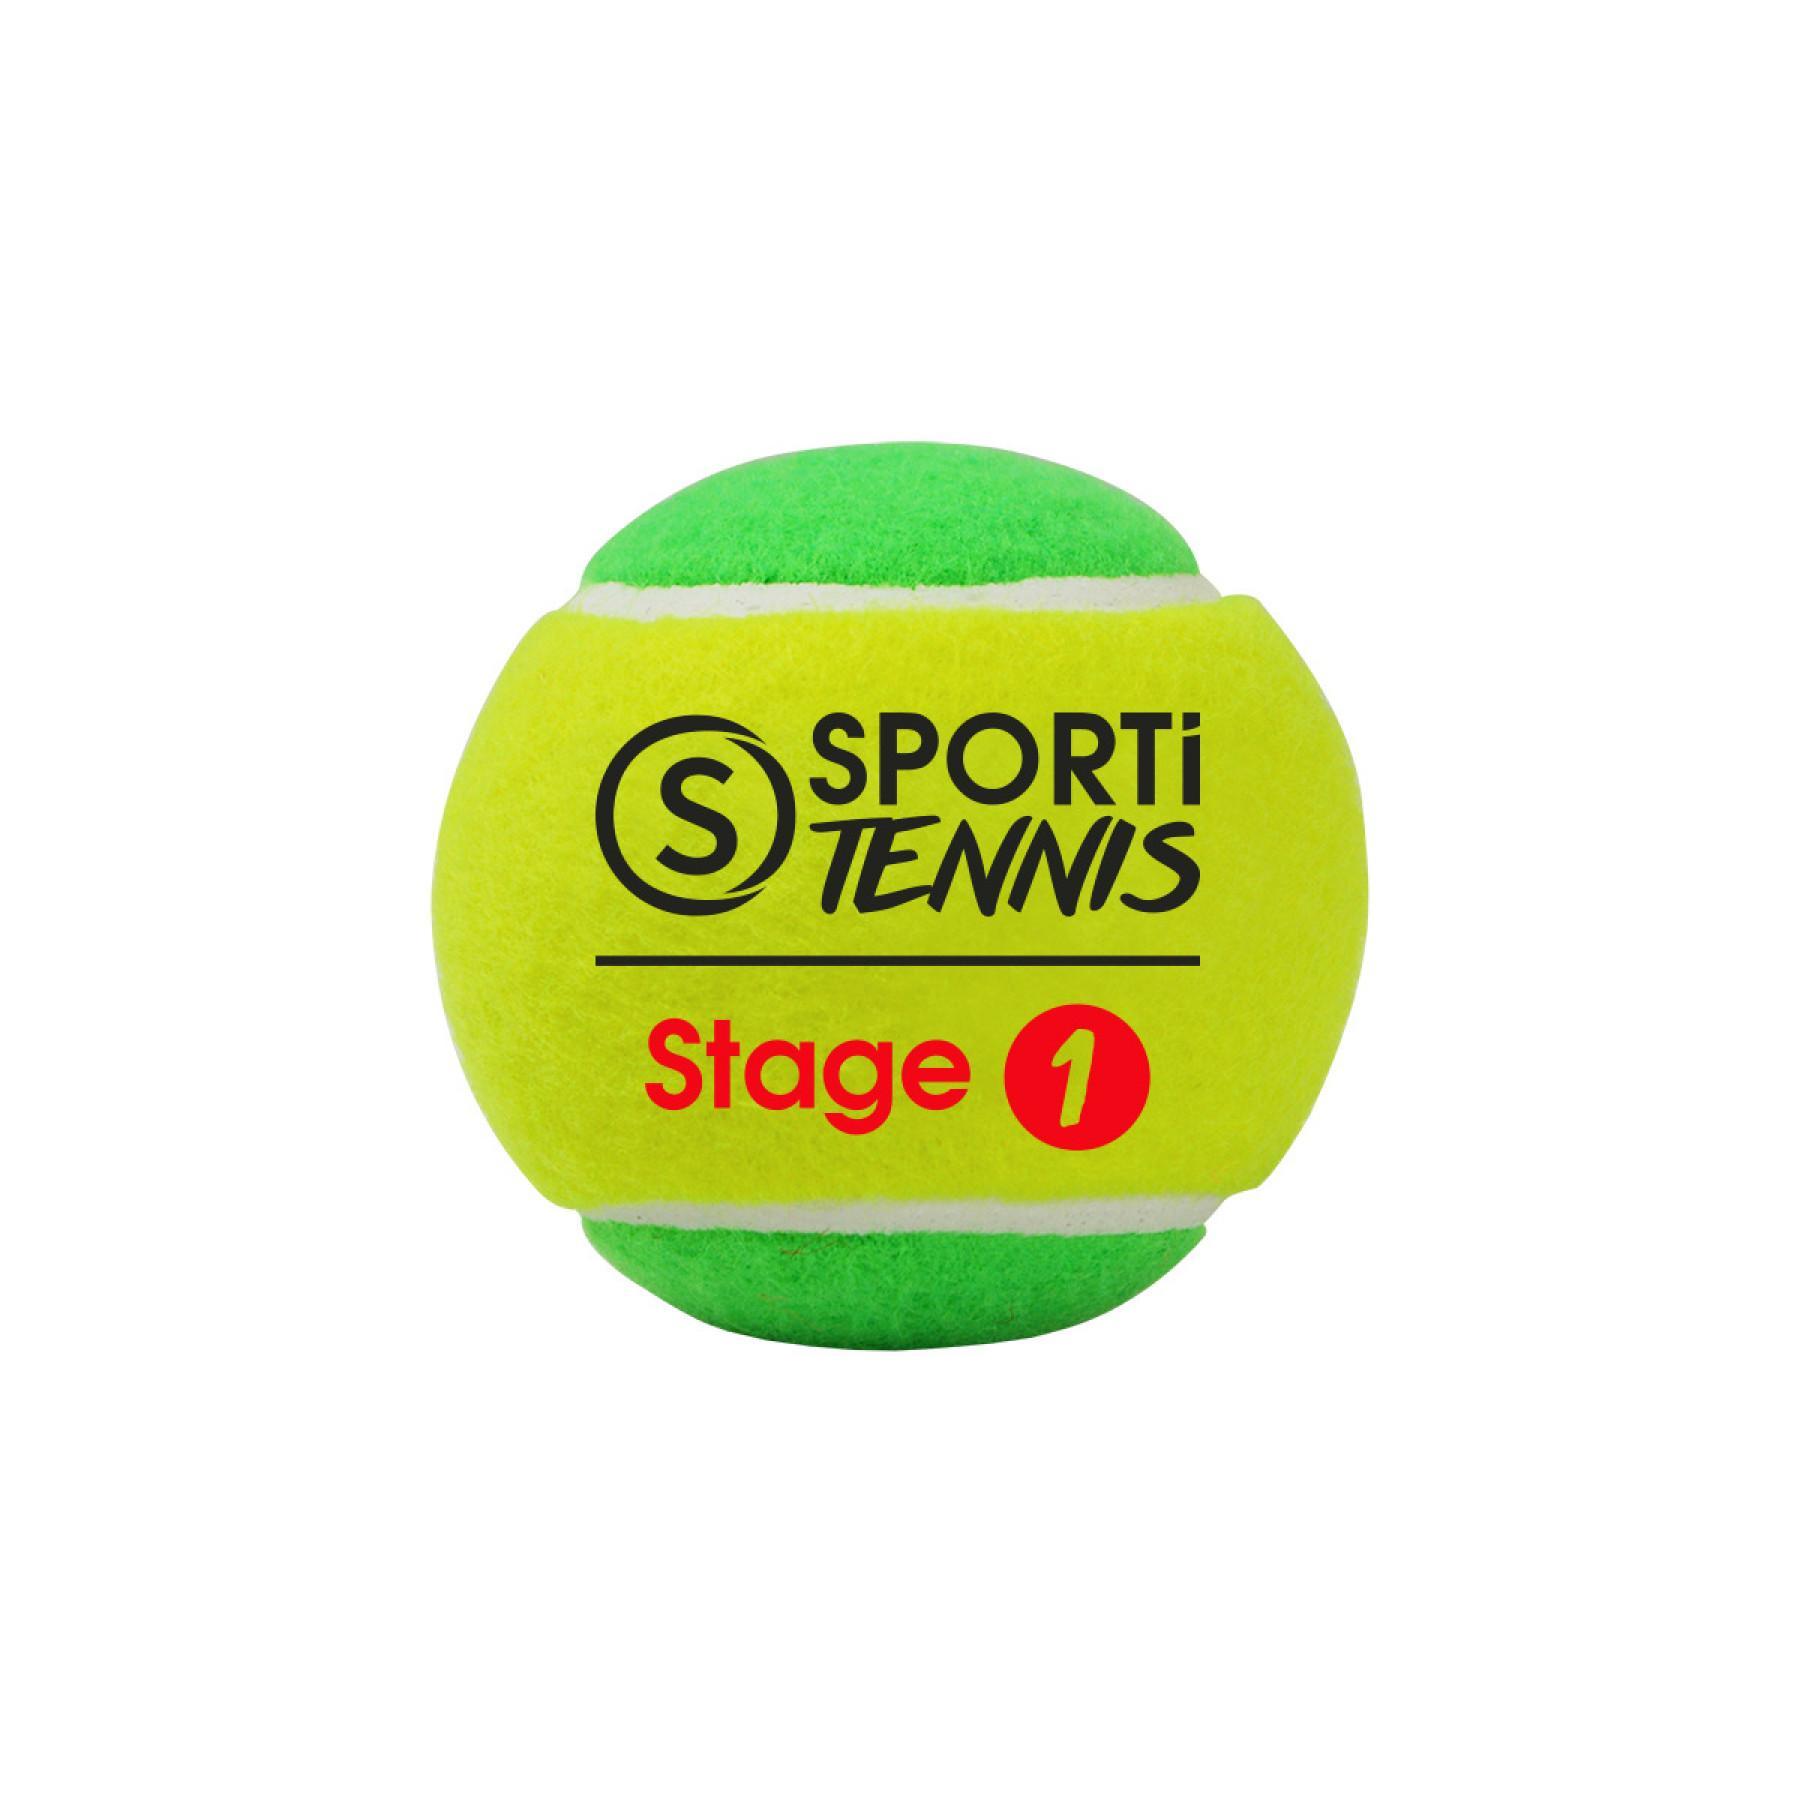 Beutel mit 3 Tennisbällen Stage 1 Sporti